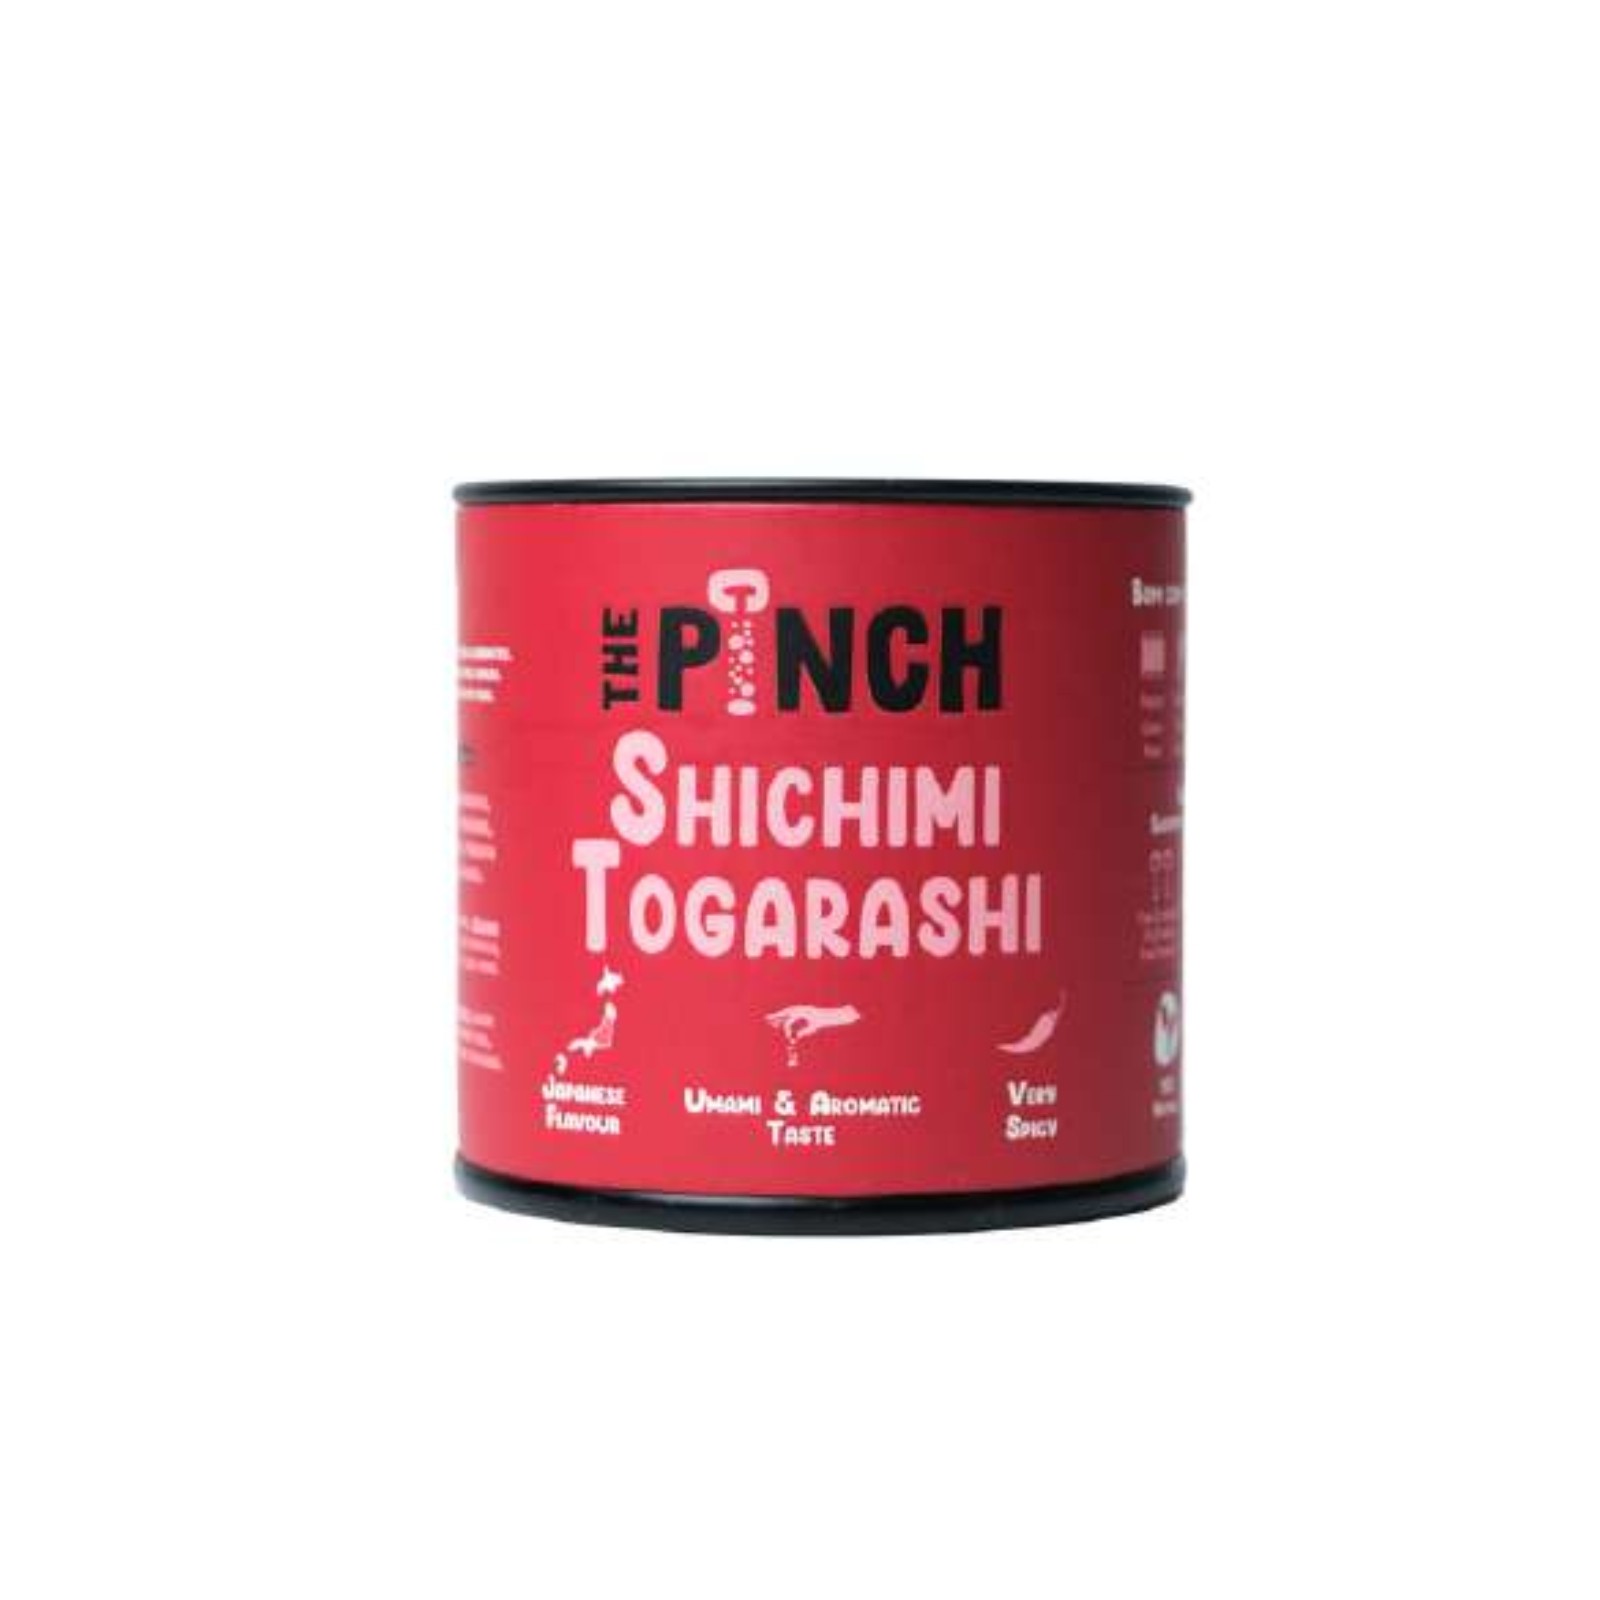 The Pinch Tempero Shichimi Togarashi